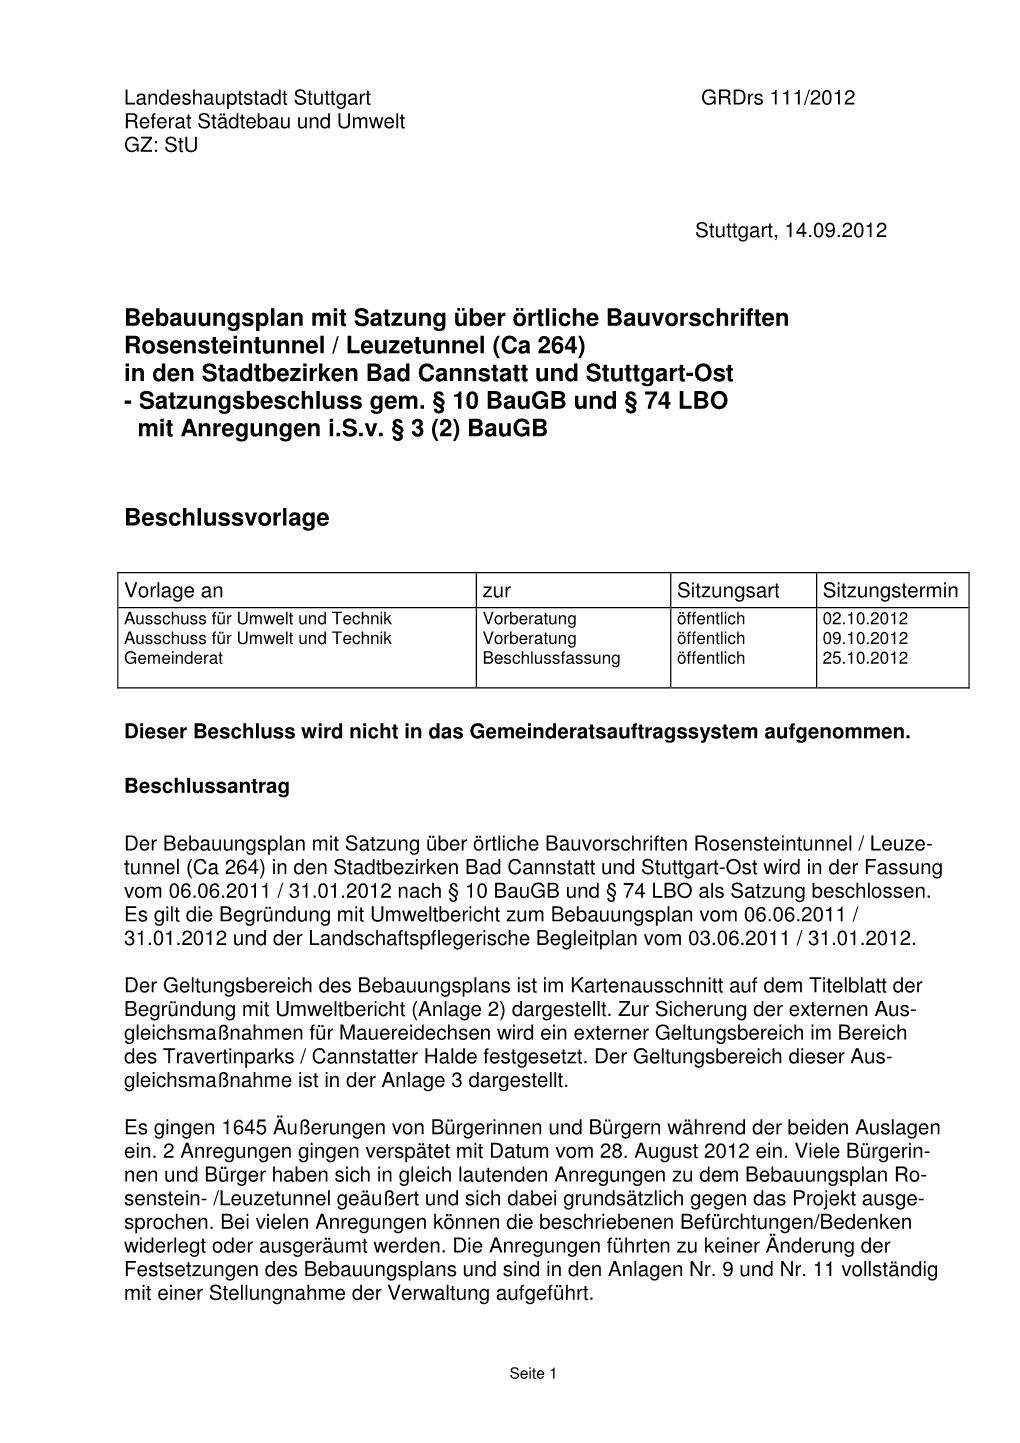 Bebauungsplan Mit Satzung Über Örtliche Bauvorschriften Rosensteintunnel / Leuzetunnel (Ca 264) in Den Stadtbezirken Bad Canns